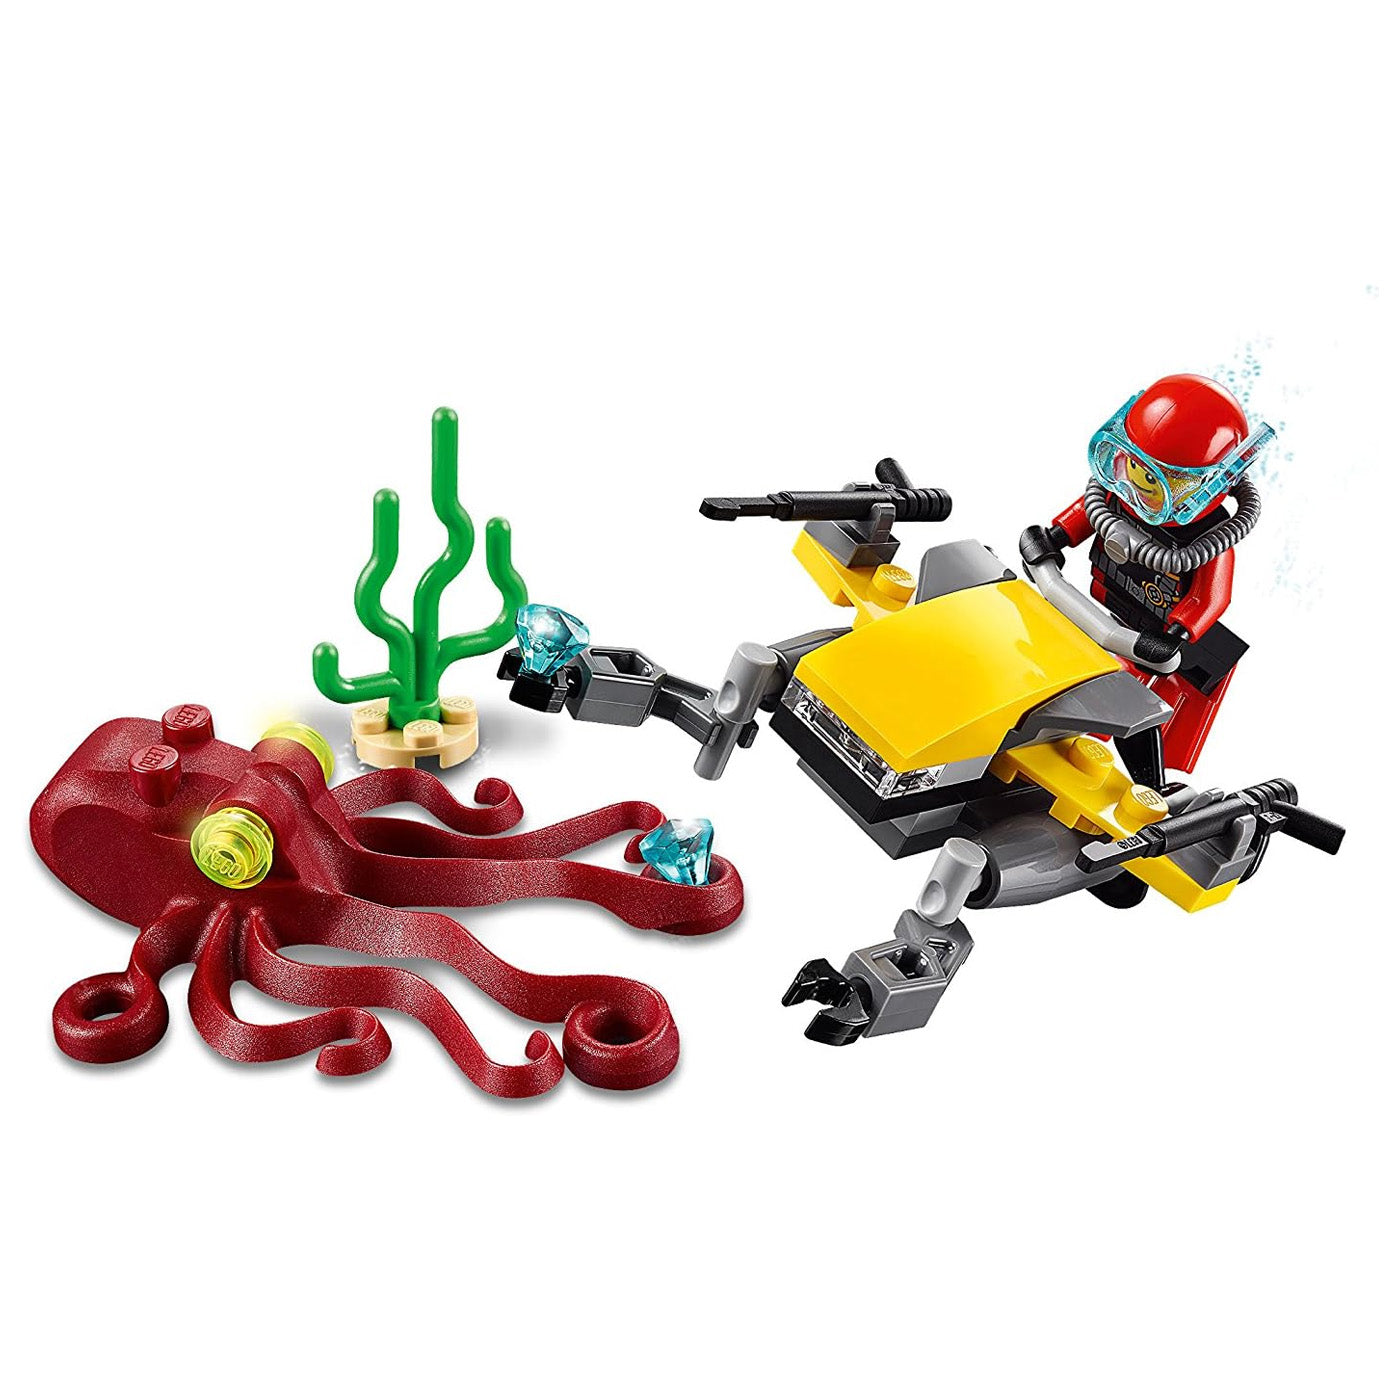 LEGO City: Deep Sea Scuba Scooter Set 60090